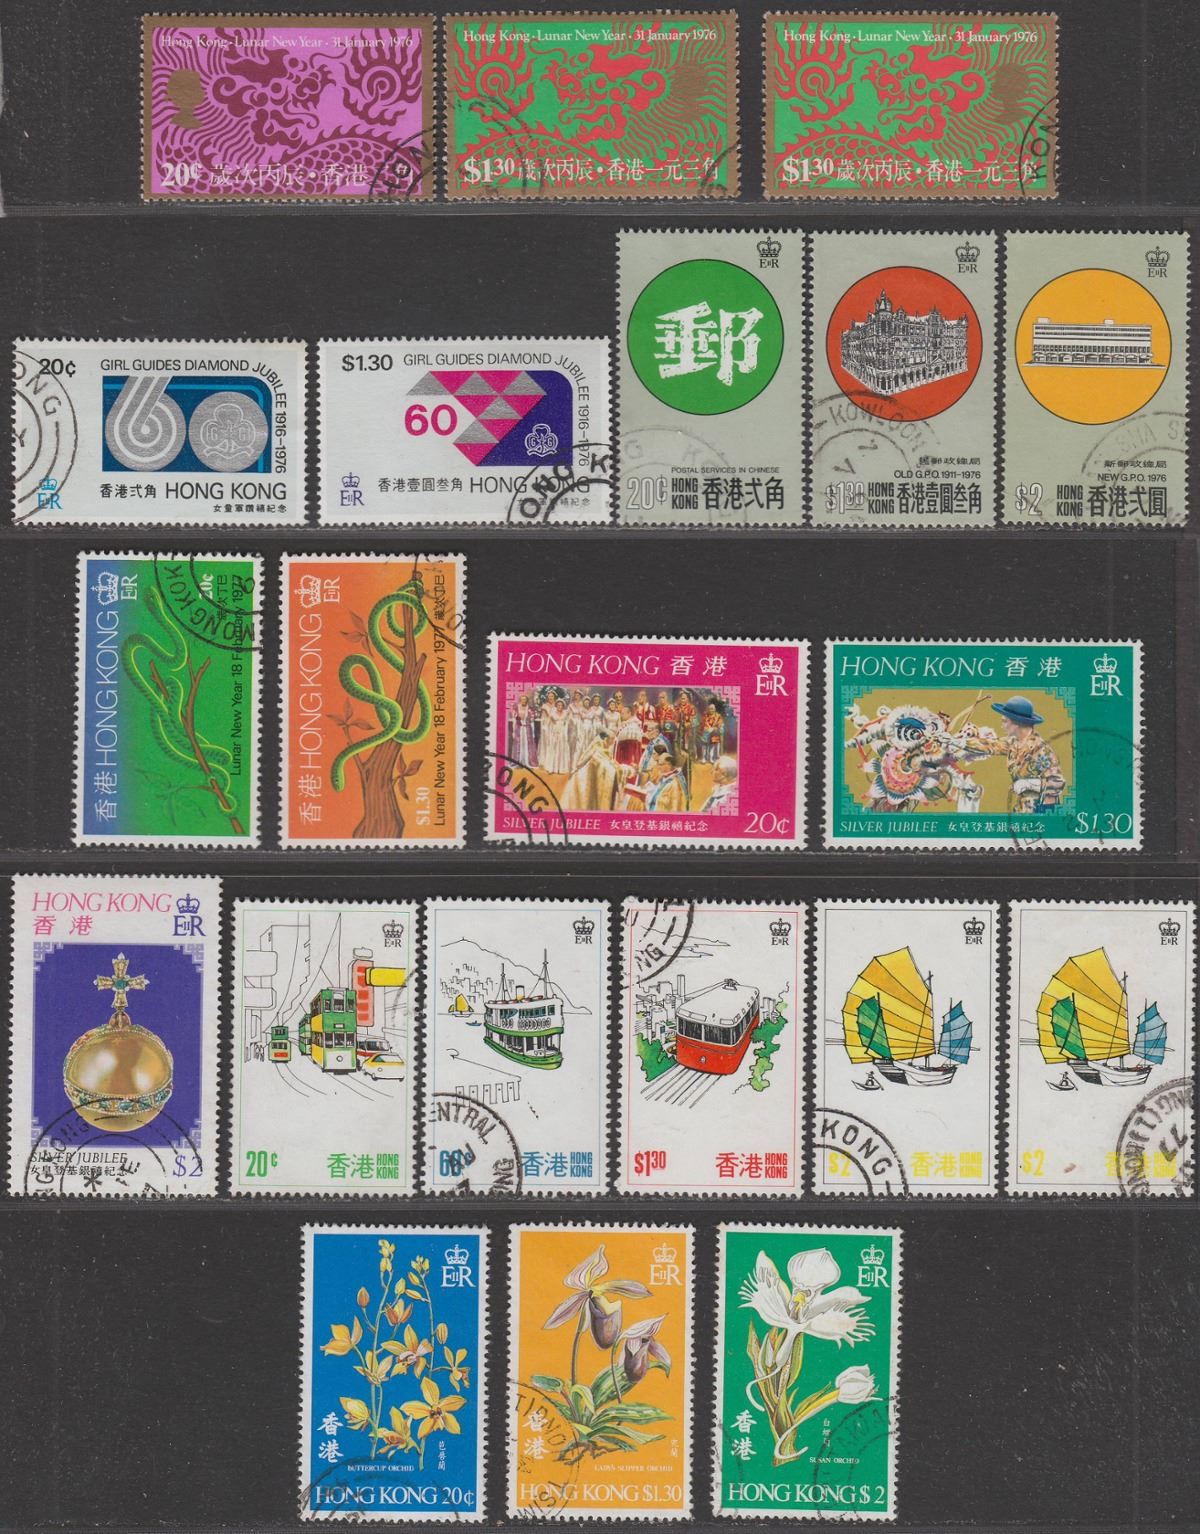 Hong Kong 1976-77 QEII Selection Used inc Dragon, Guides, GPO, Snake, Tourism